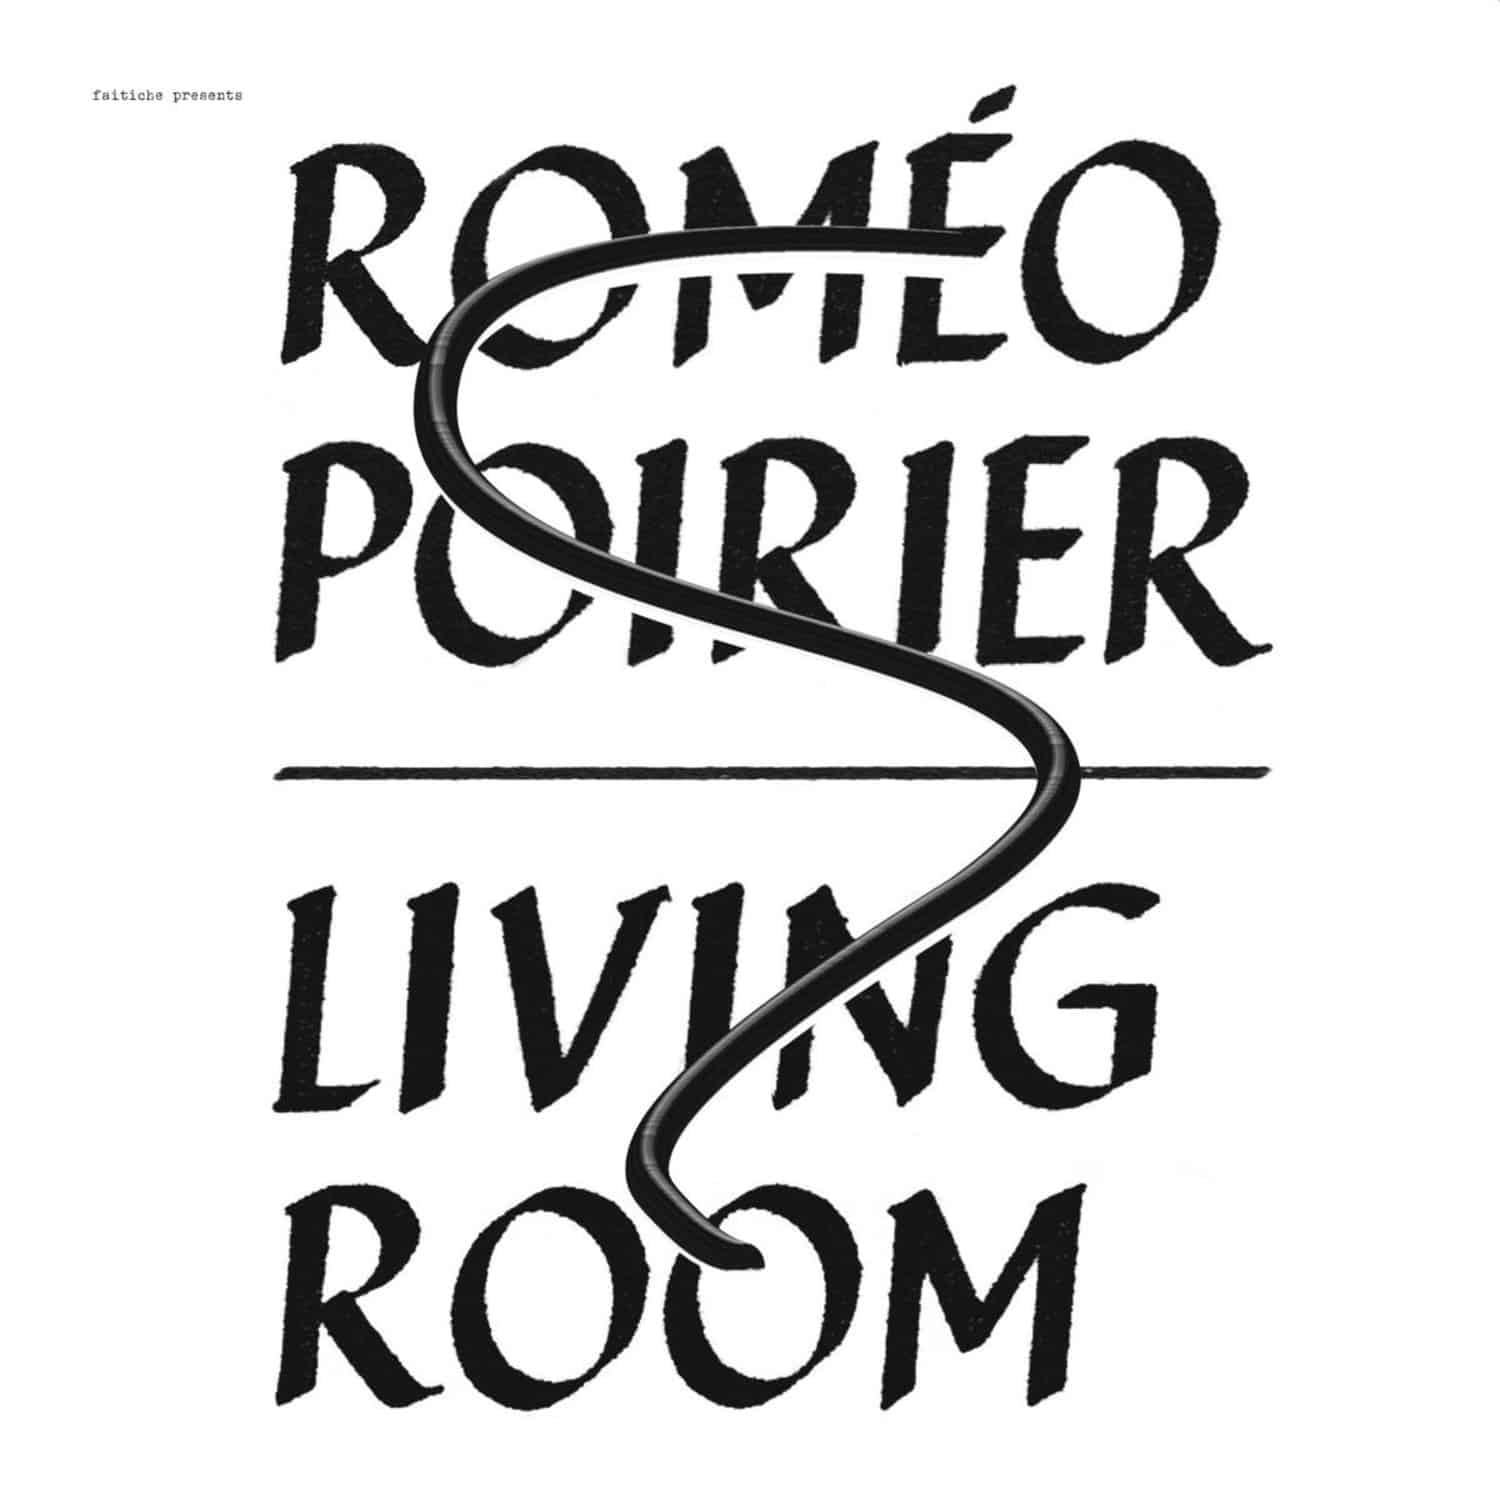 Romo Poirier - LIVING ROOM 